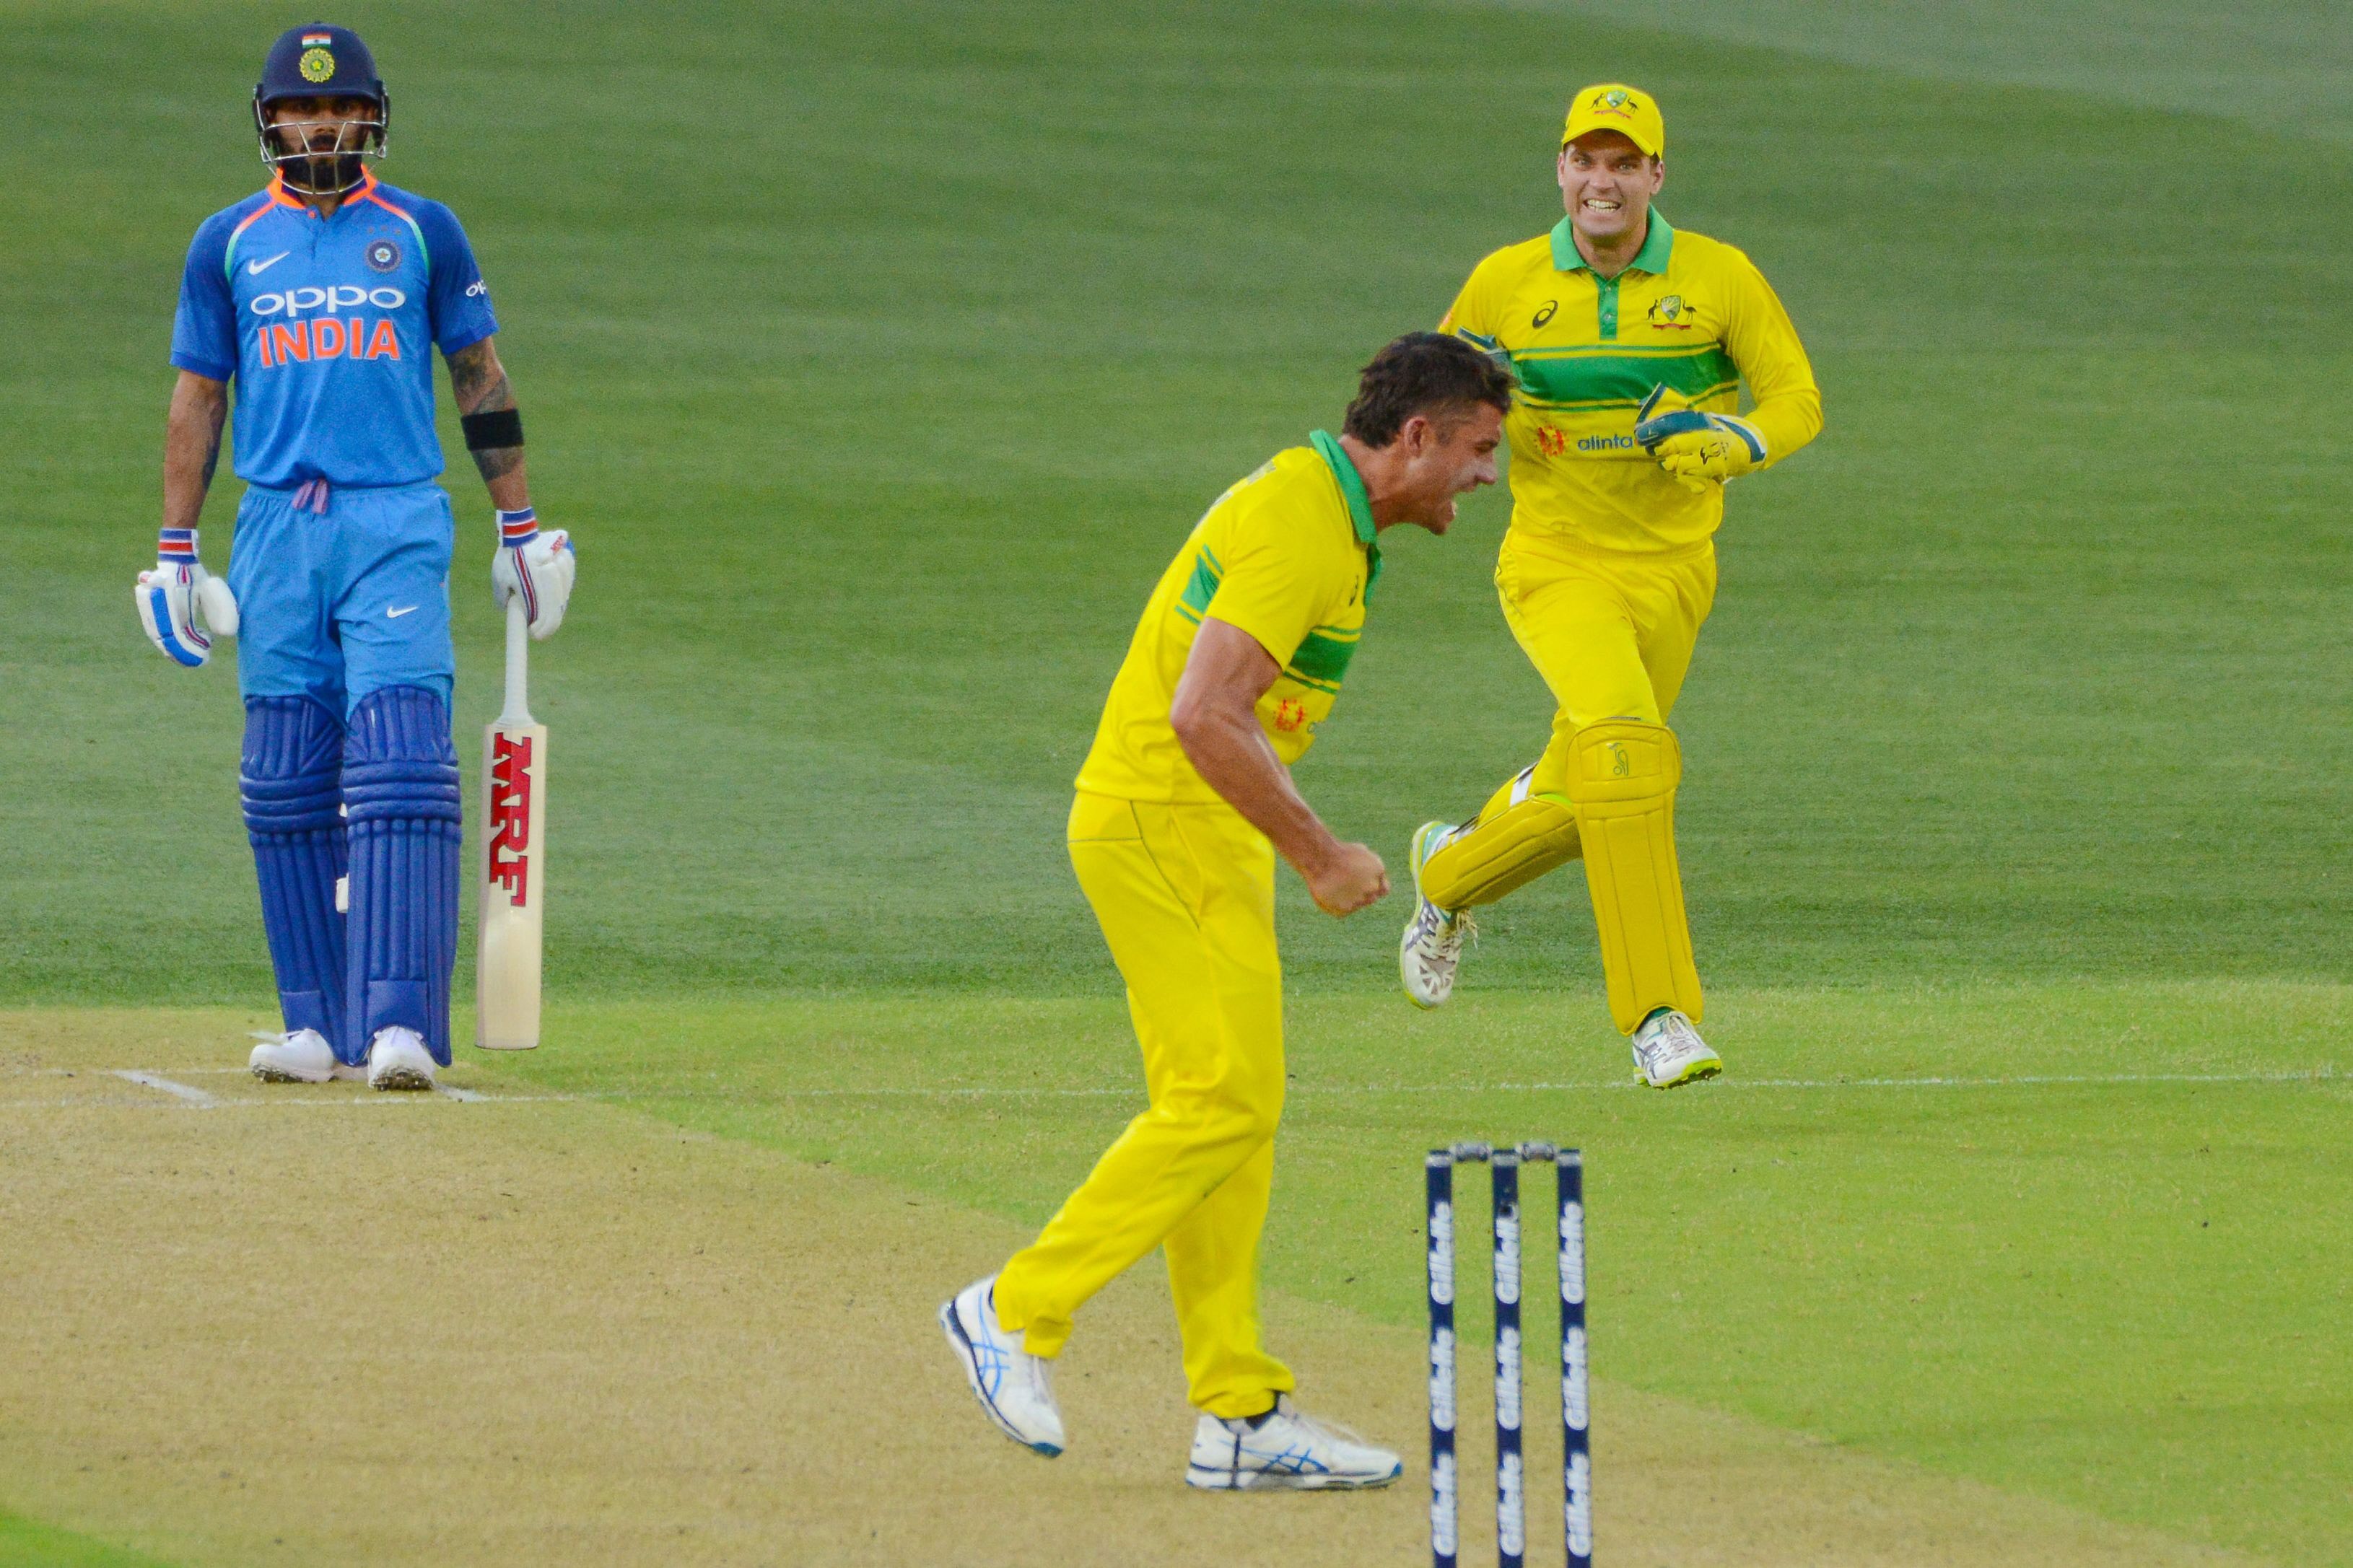 Australia vs India - Second ODI in Adelaide